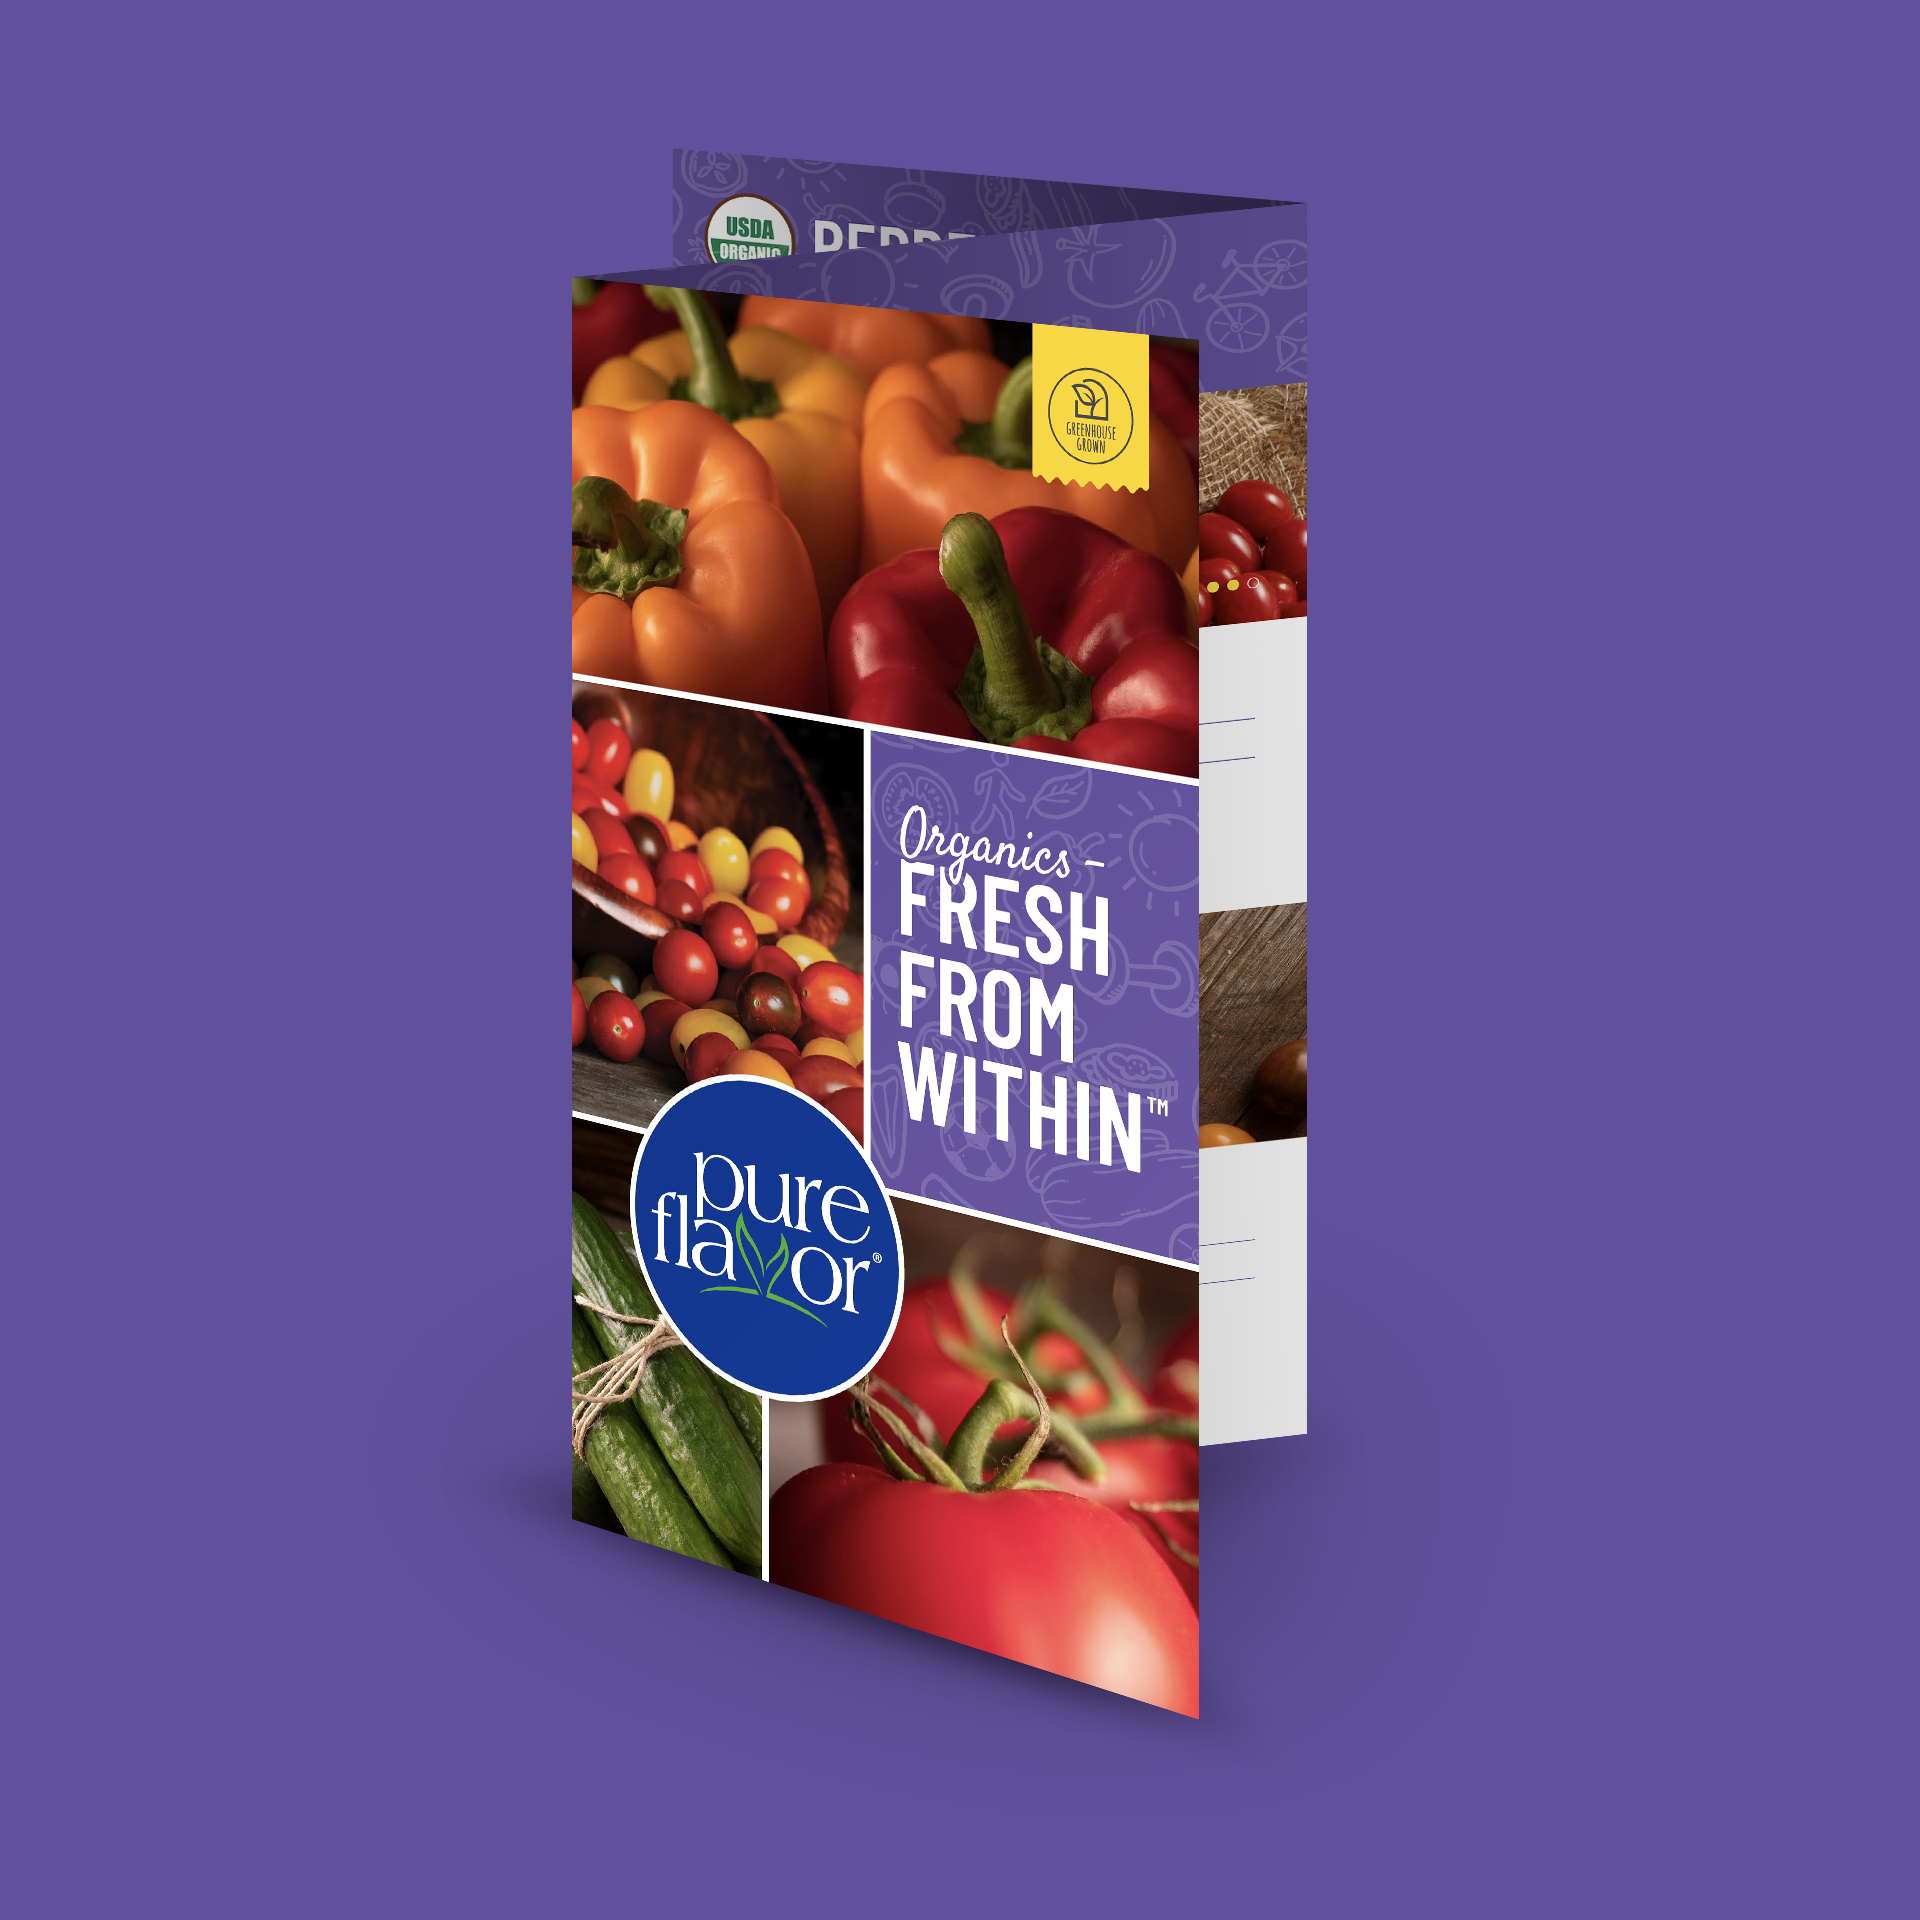 The Pure Flavor 2020 Organics Brochure